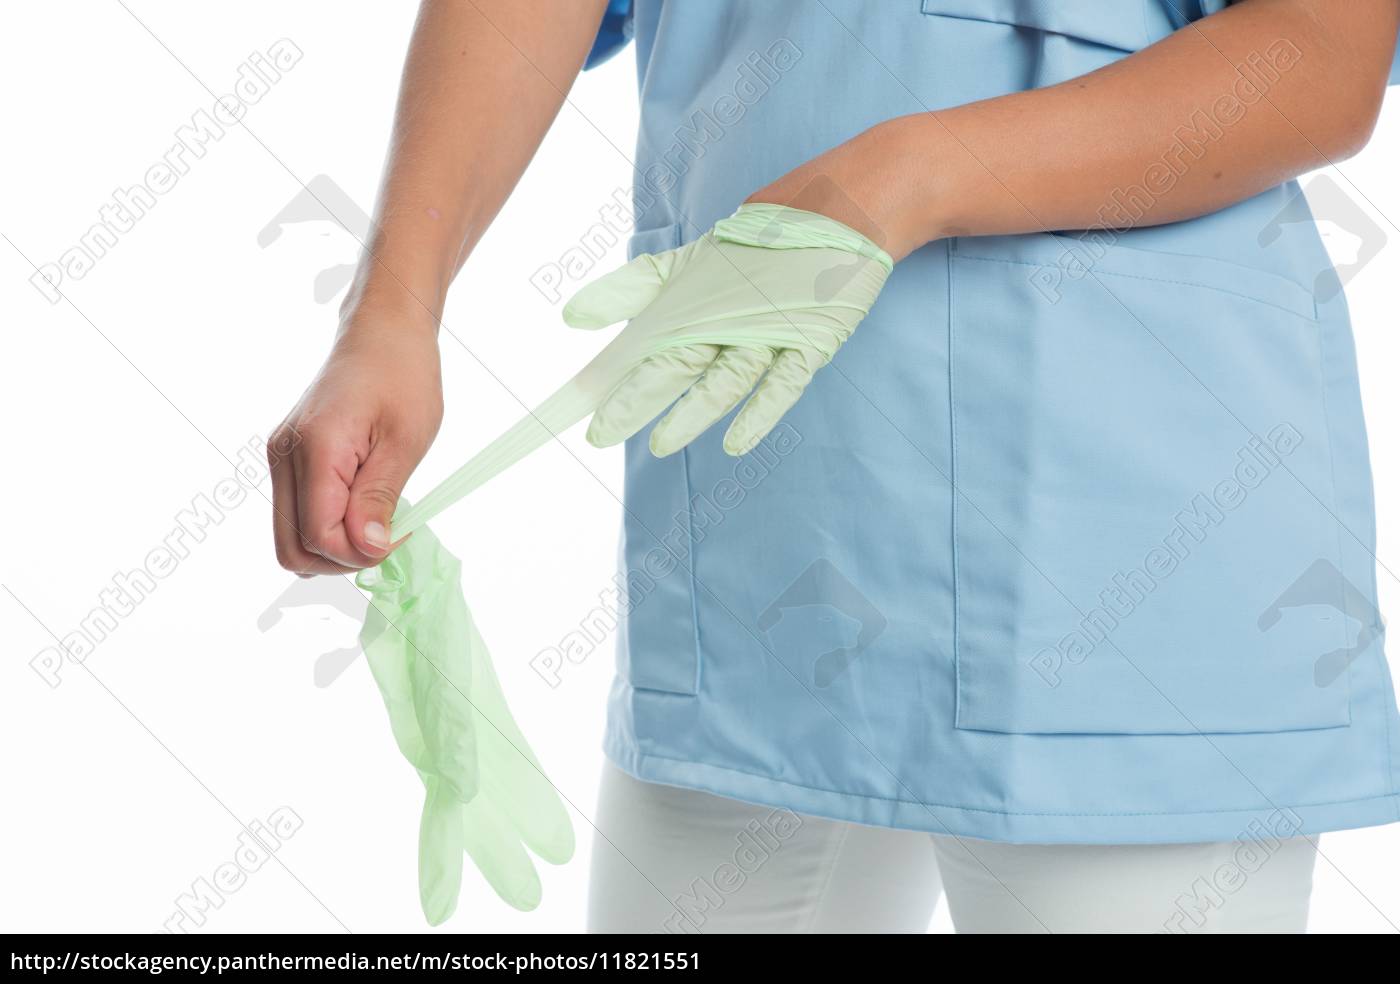 sygeplejerske med latex handsker - Stockphoto #11821551 Billedbureau